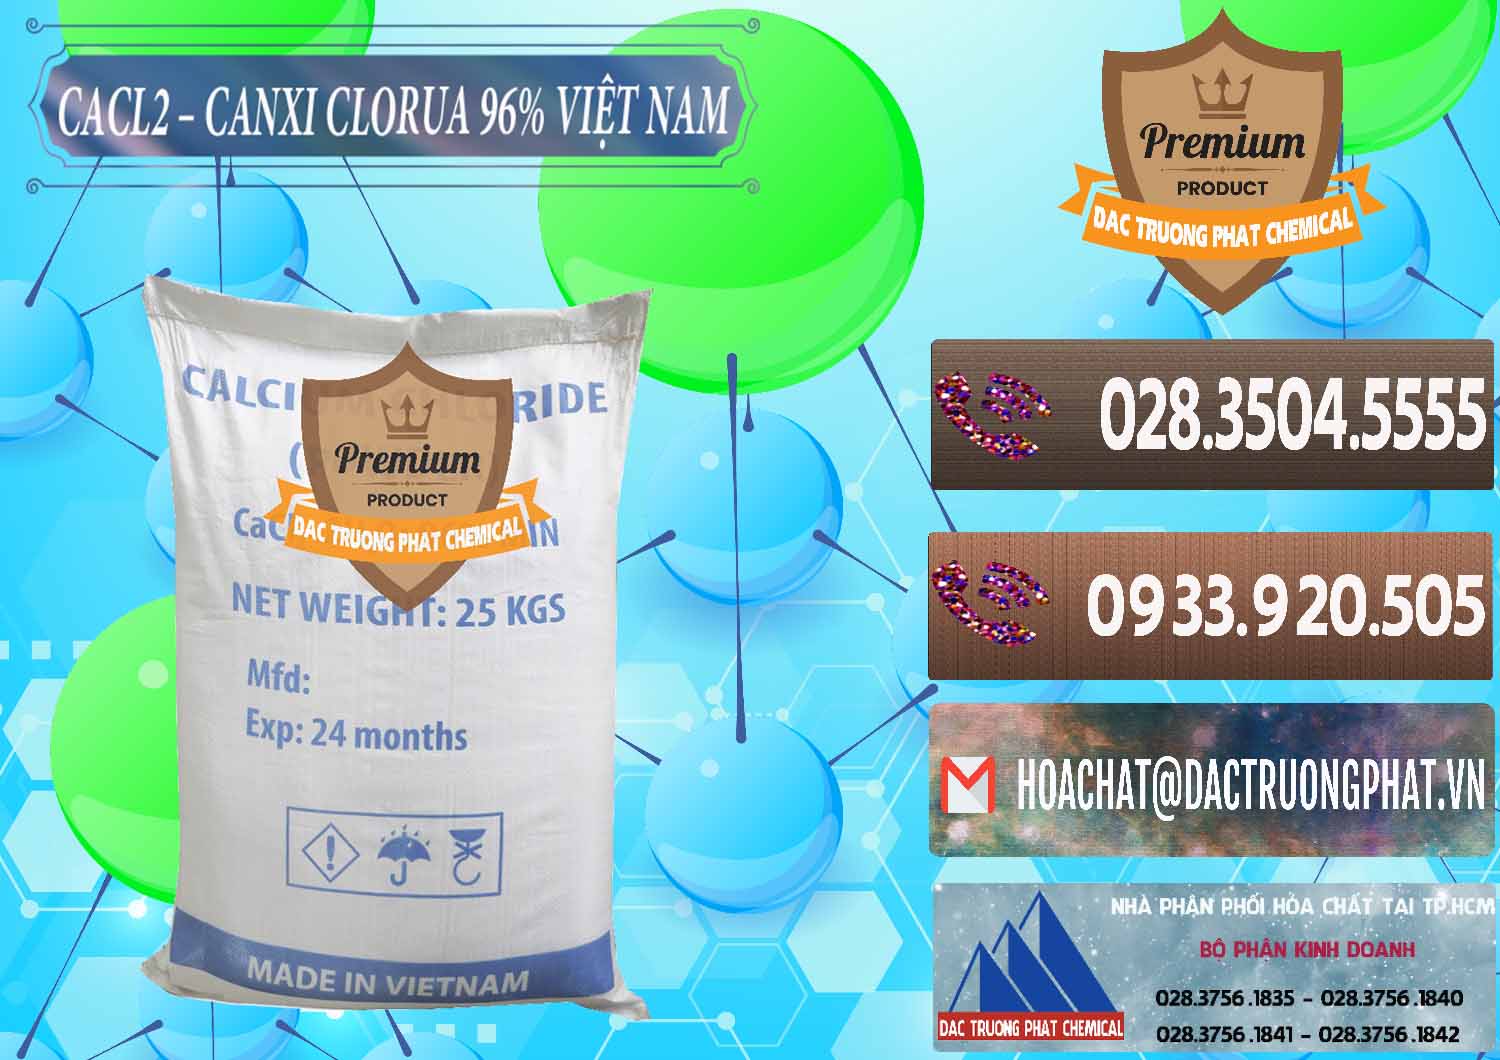 Chuyên cung ứng & phân phối CaCl2 – Canxi Clorua 96% Việt Nam - 0236 - Nơi bán _ cung ứng hóa chất tại TP.HCM - hoachatviet.net